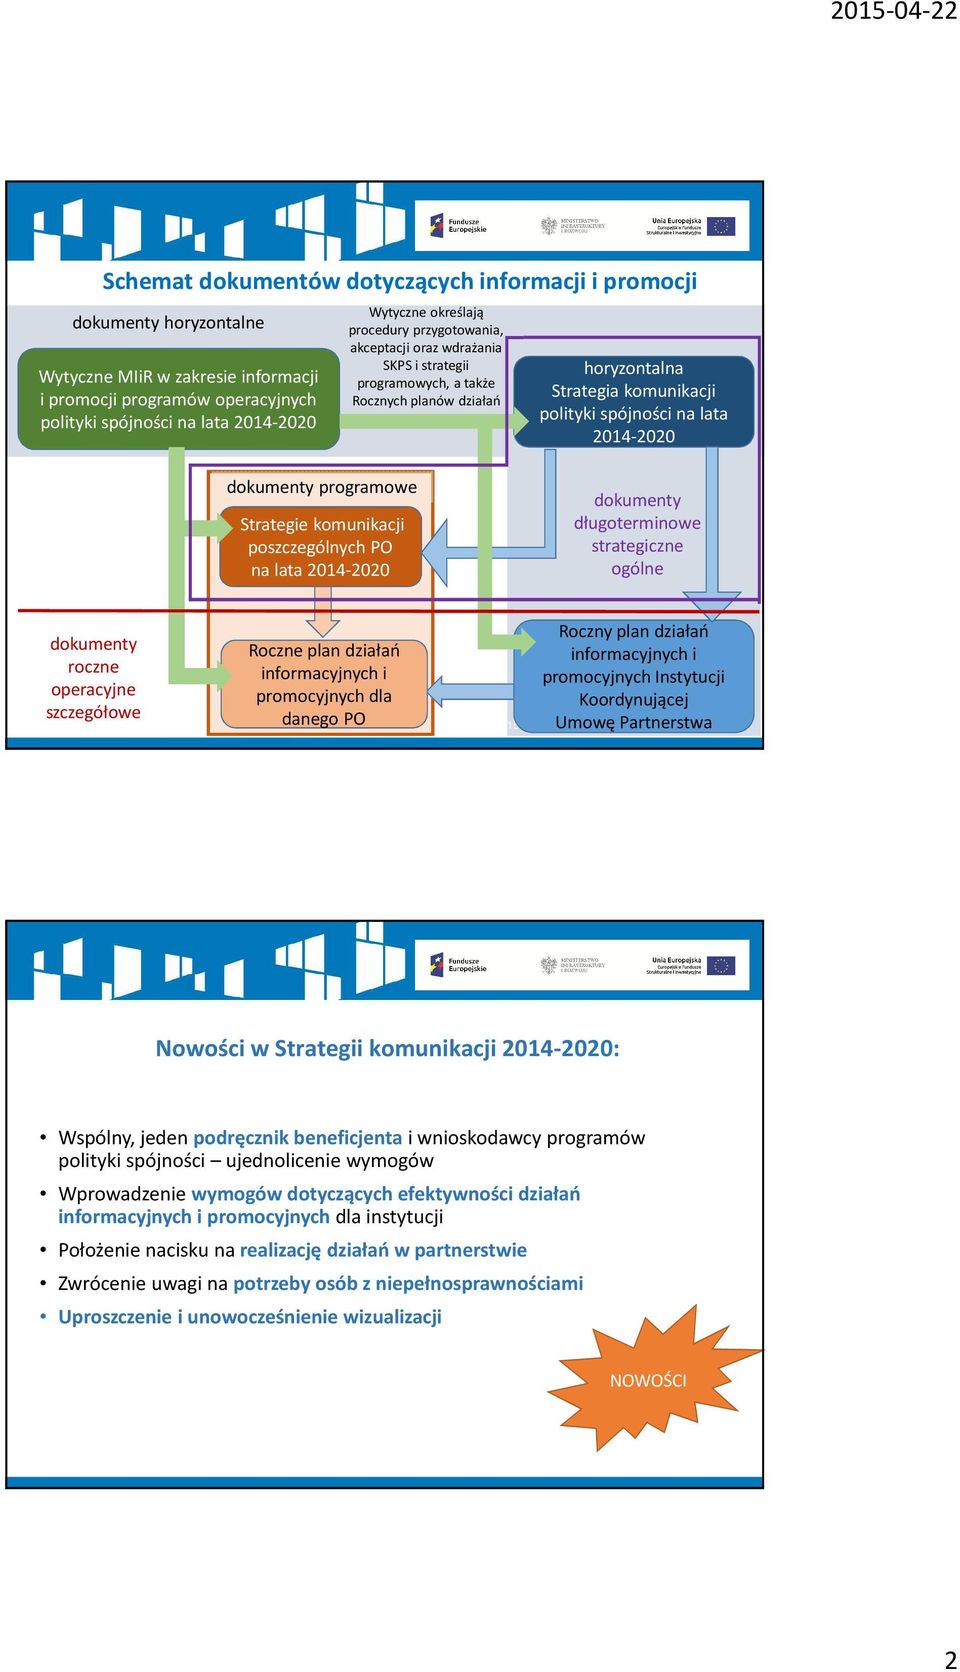 dokumenty programowe Strategie komunikacji poszczególnych PO na lata 2014-2020 dokumenty długoterminowe strategiczne ogólne dokumenty roczne operacyjne szczegółowe Roczne plan działań informacyjnych